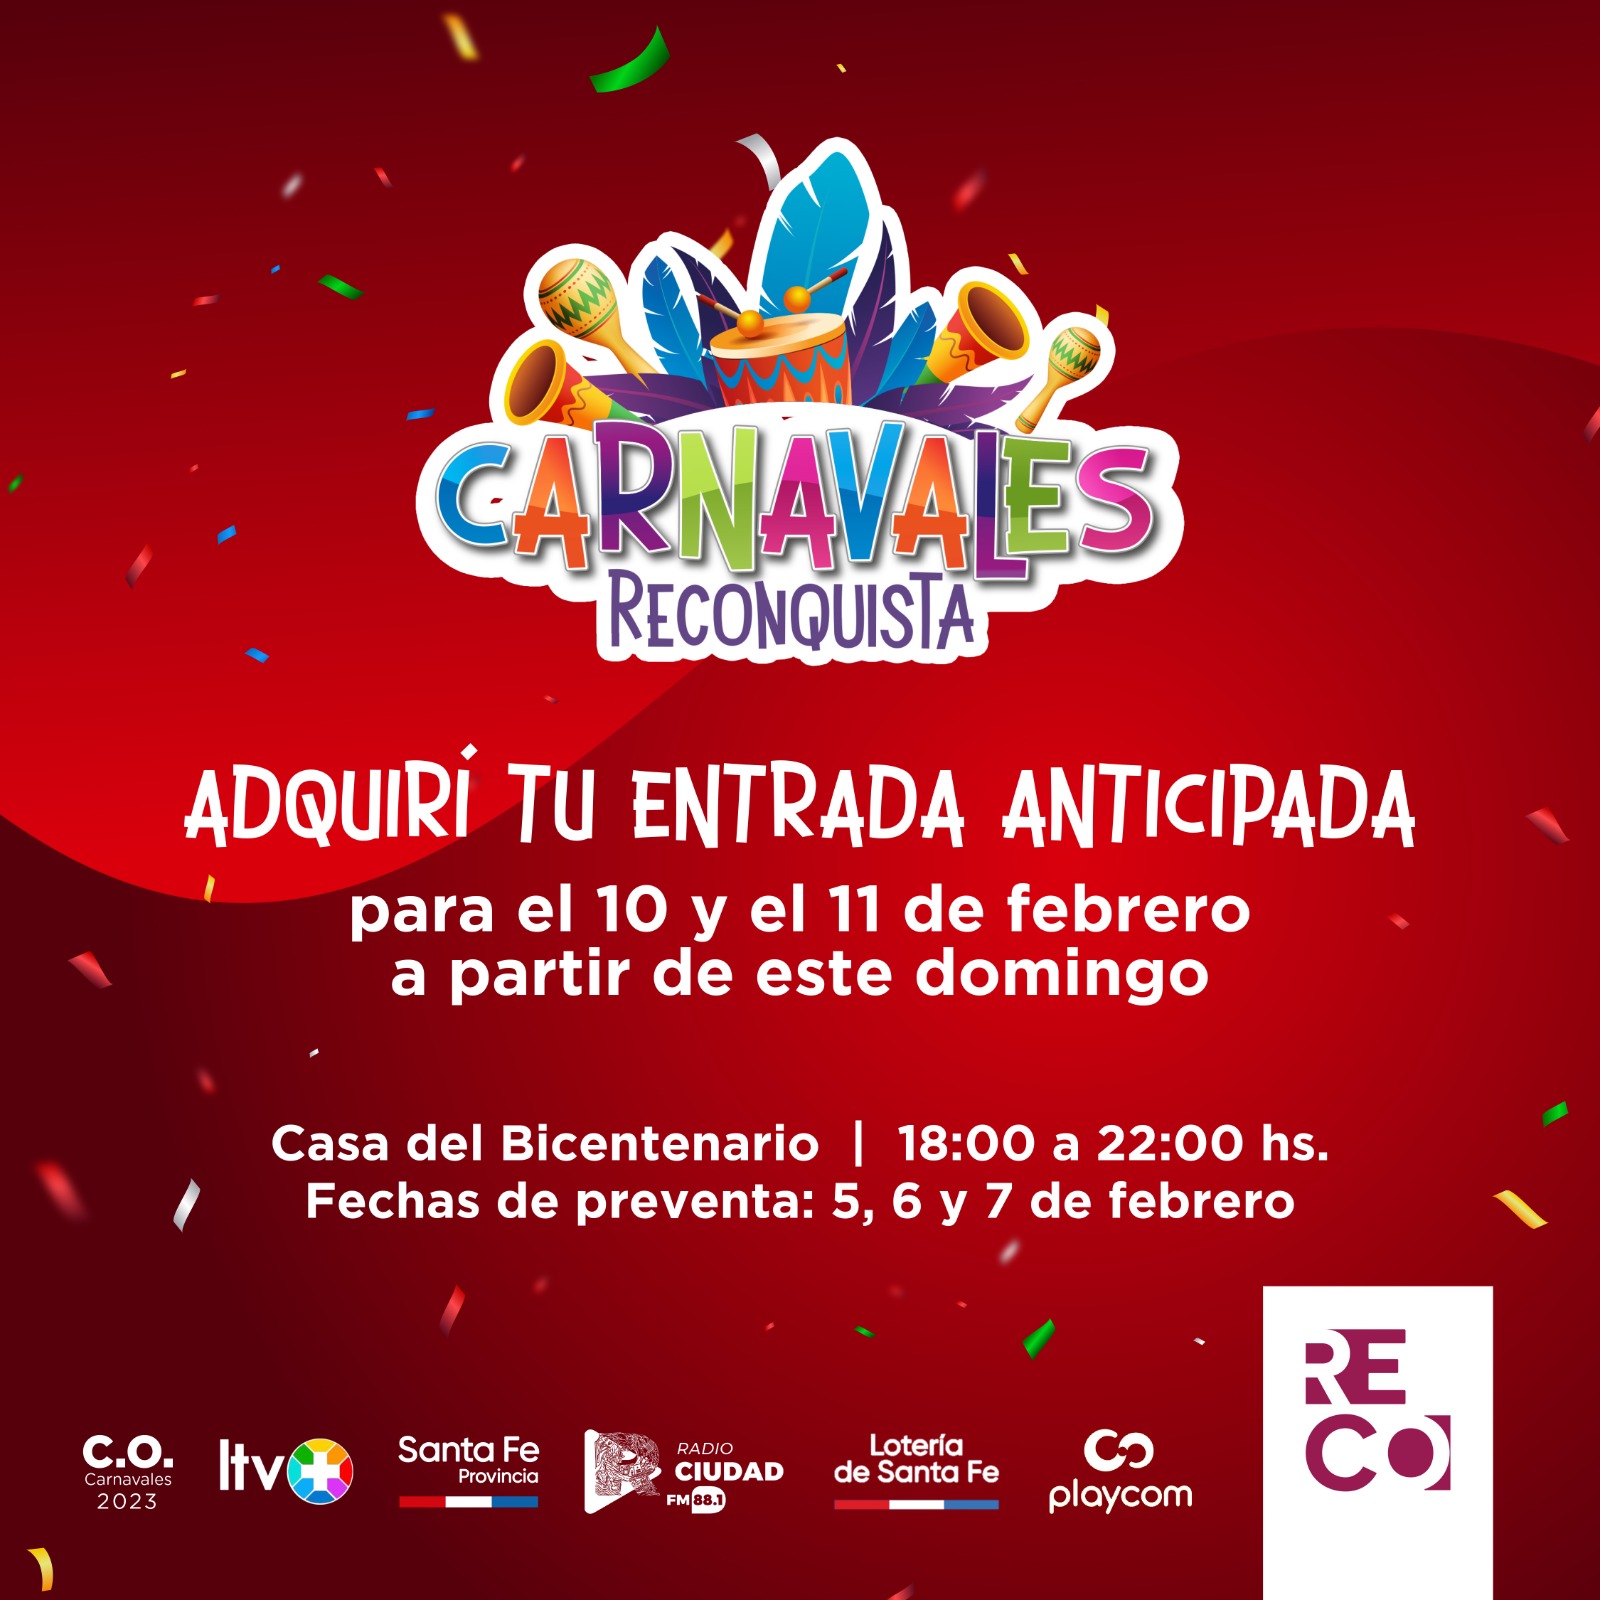 Carnavales 2023: anticipate y comprá tu entrada a partir del domingo